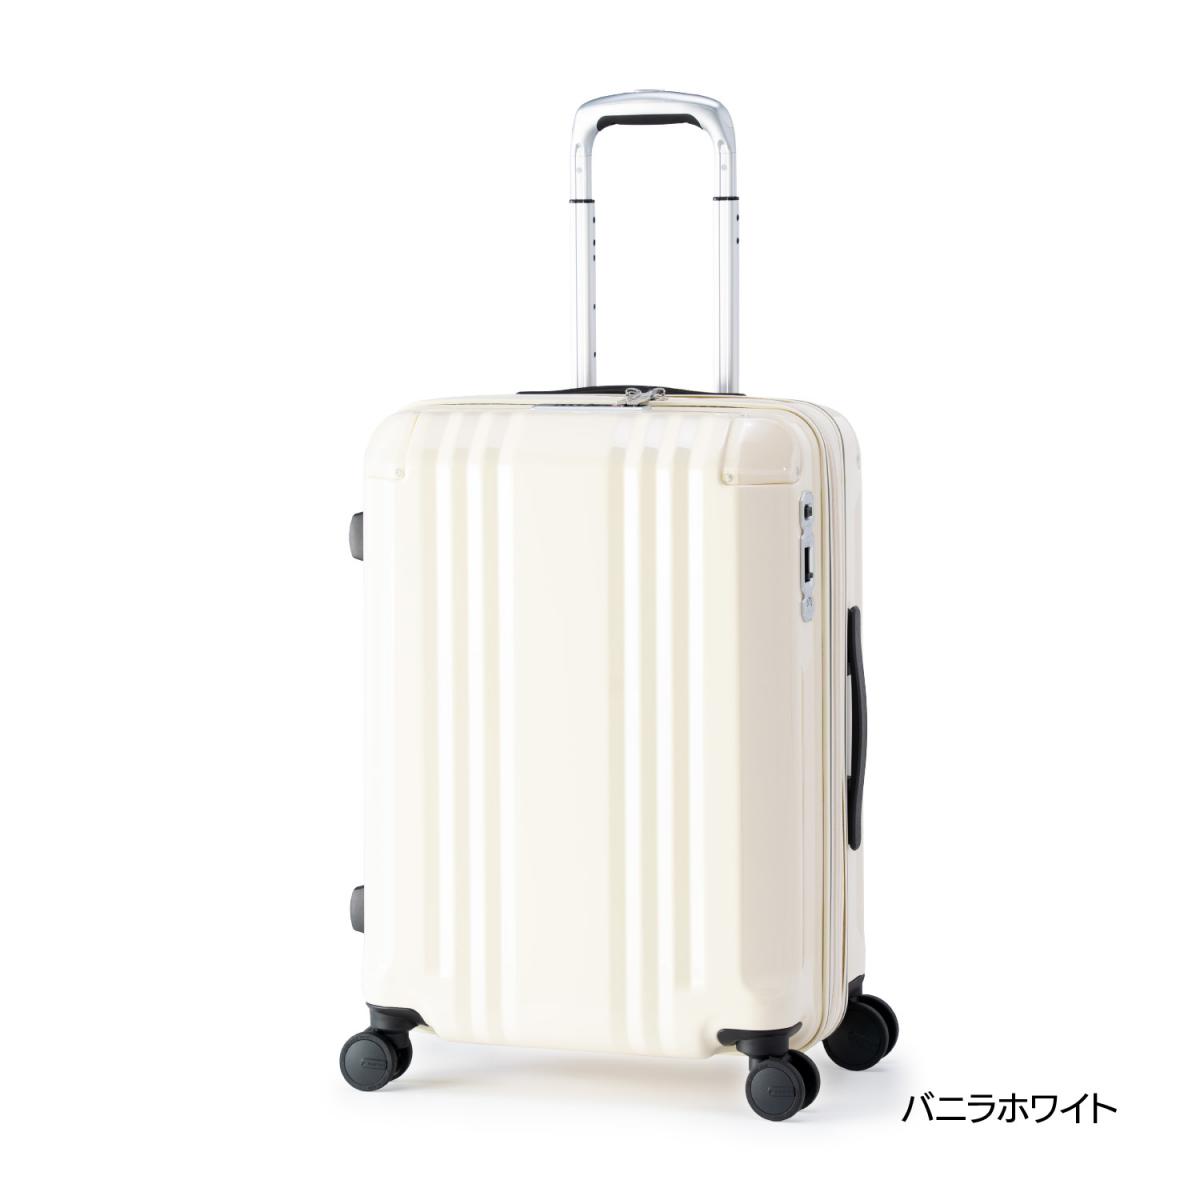 アジアラゲージ スーツケース デカかるEdge 拡張タイプ バニラホワイト ALI-088-22WVA 【5～7泊】 52+8? キャリーケース